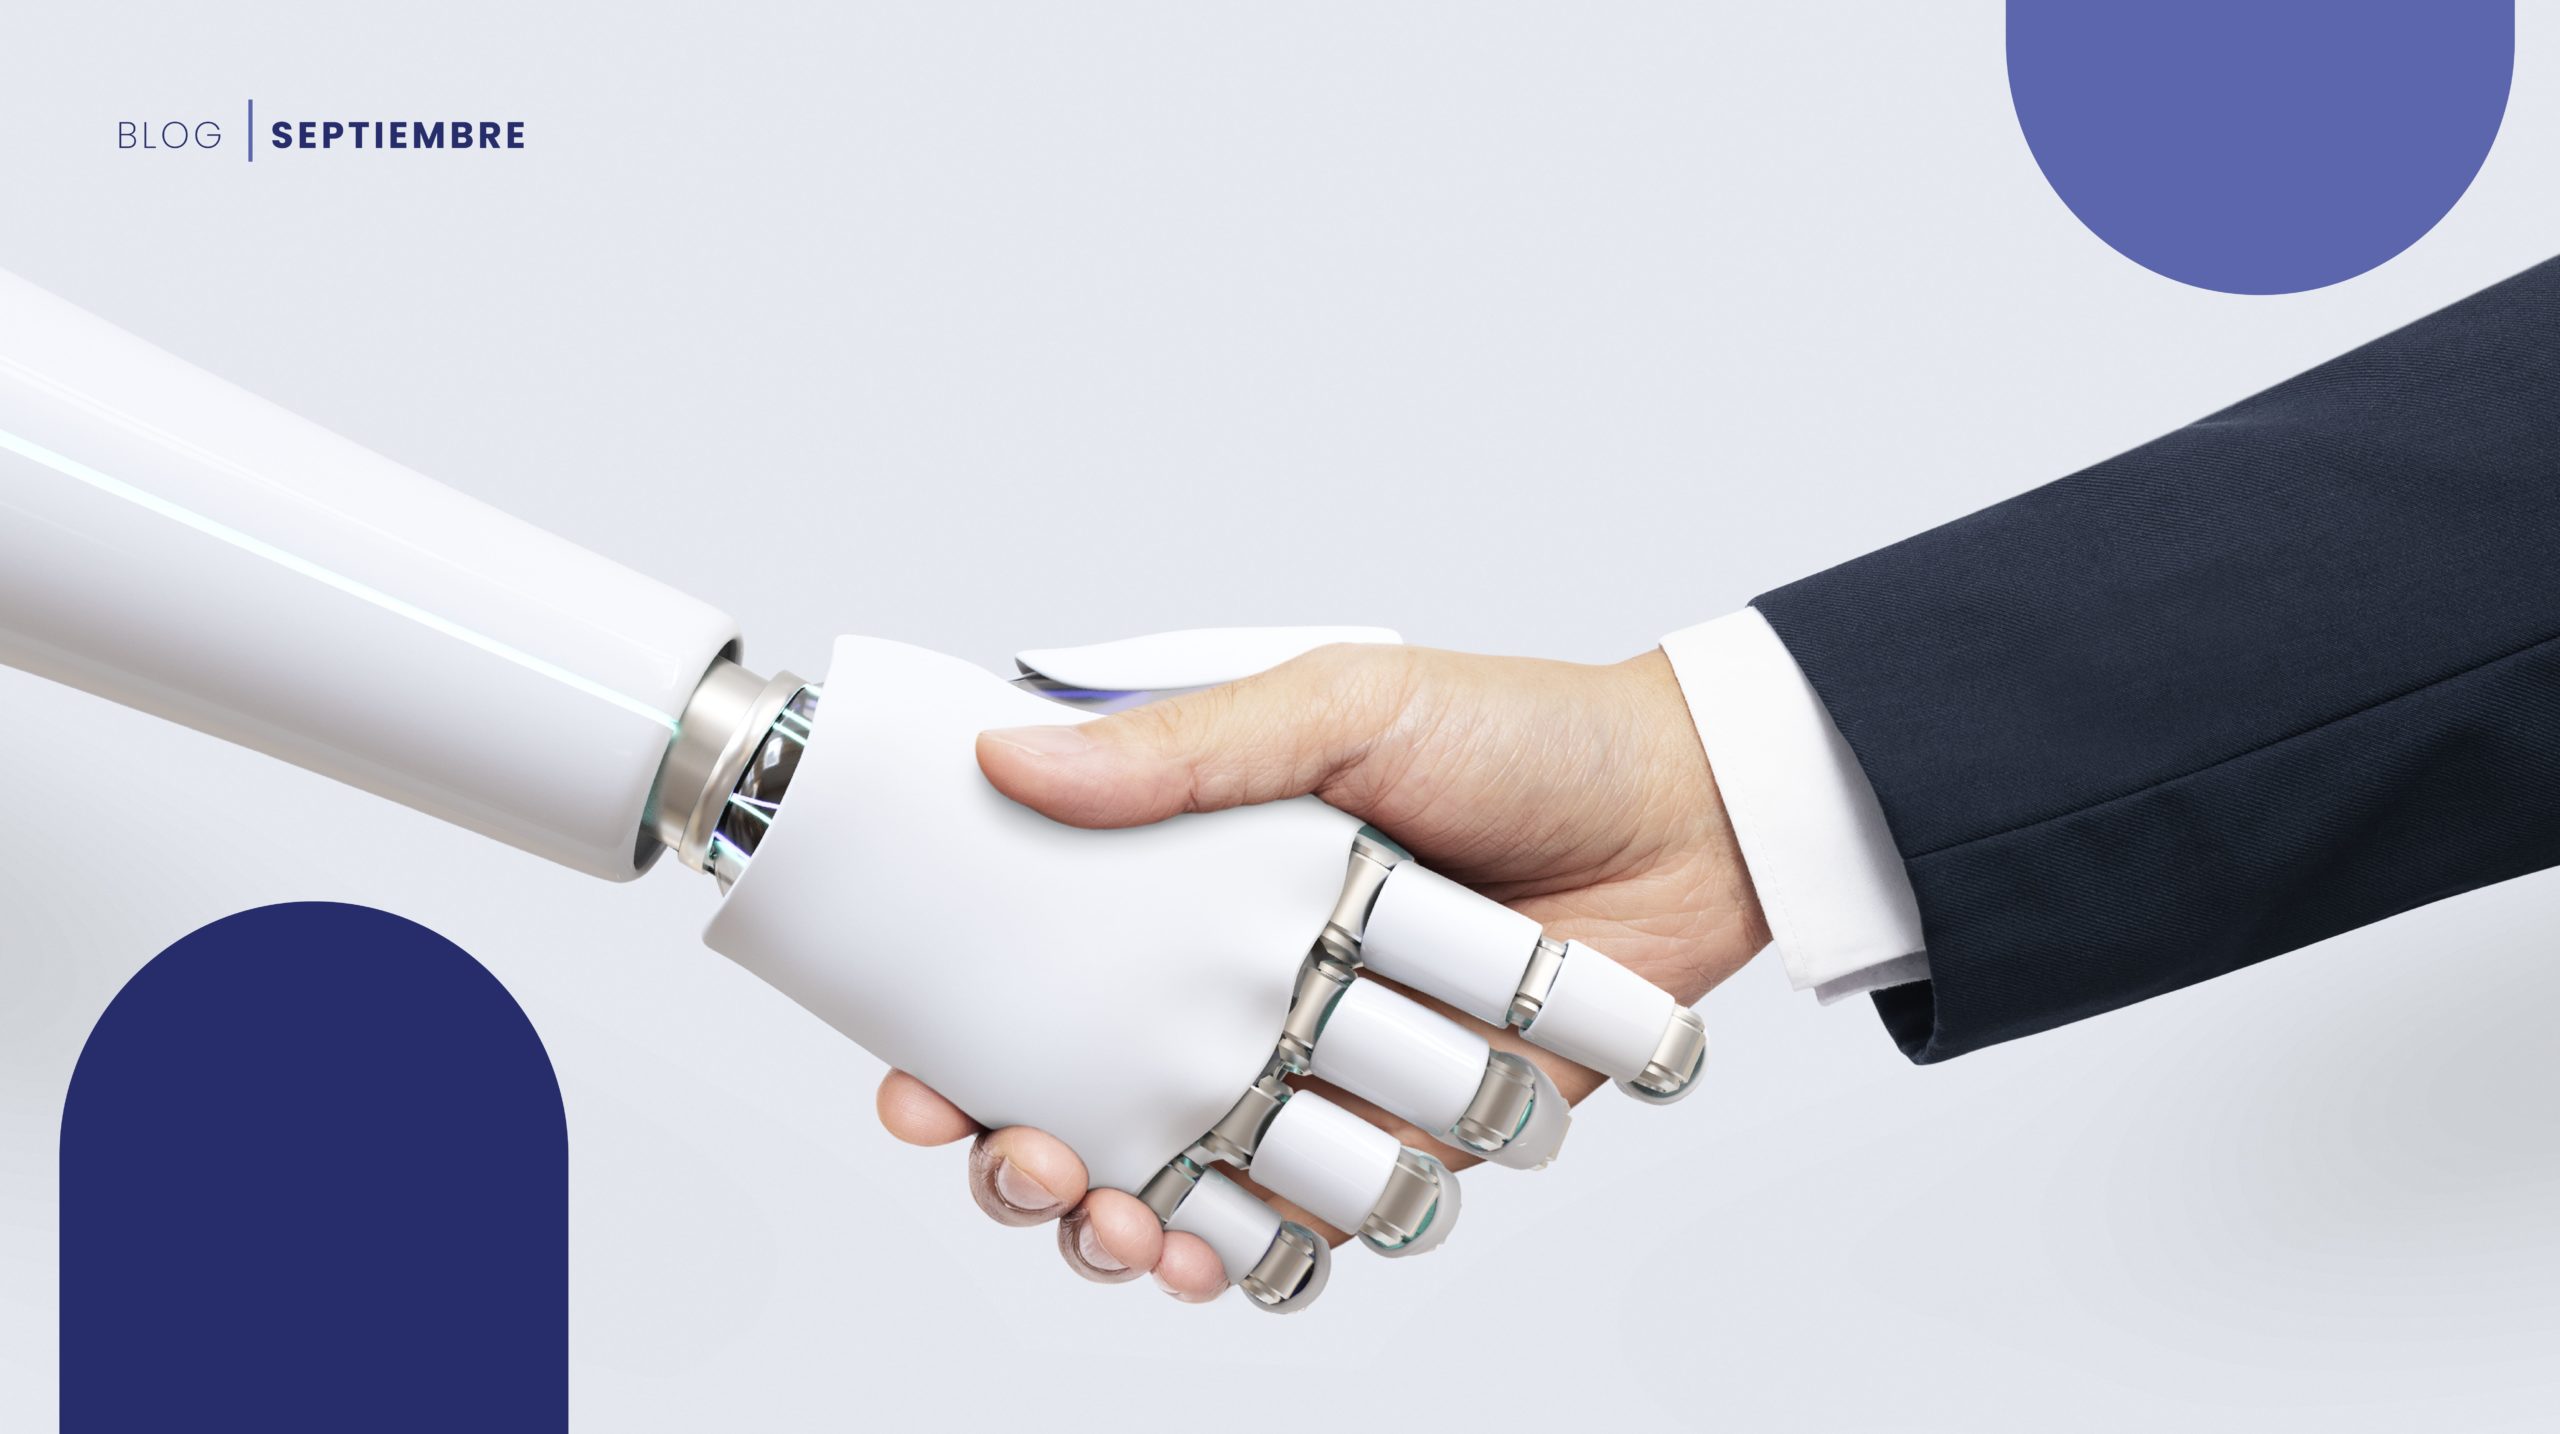 La IA y hombre estrechándose las manos